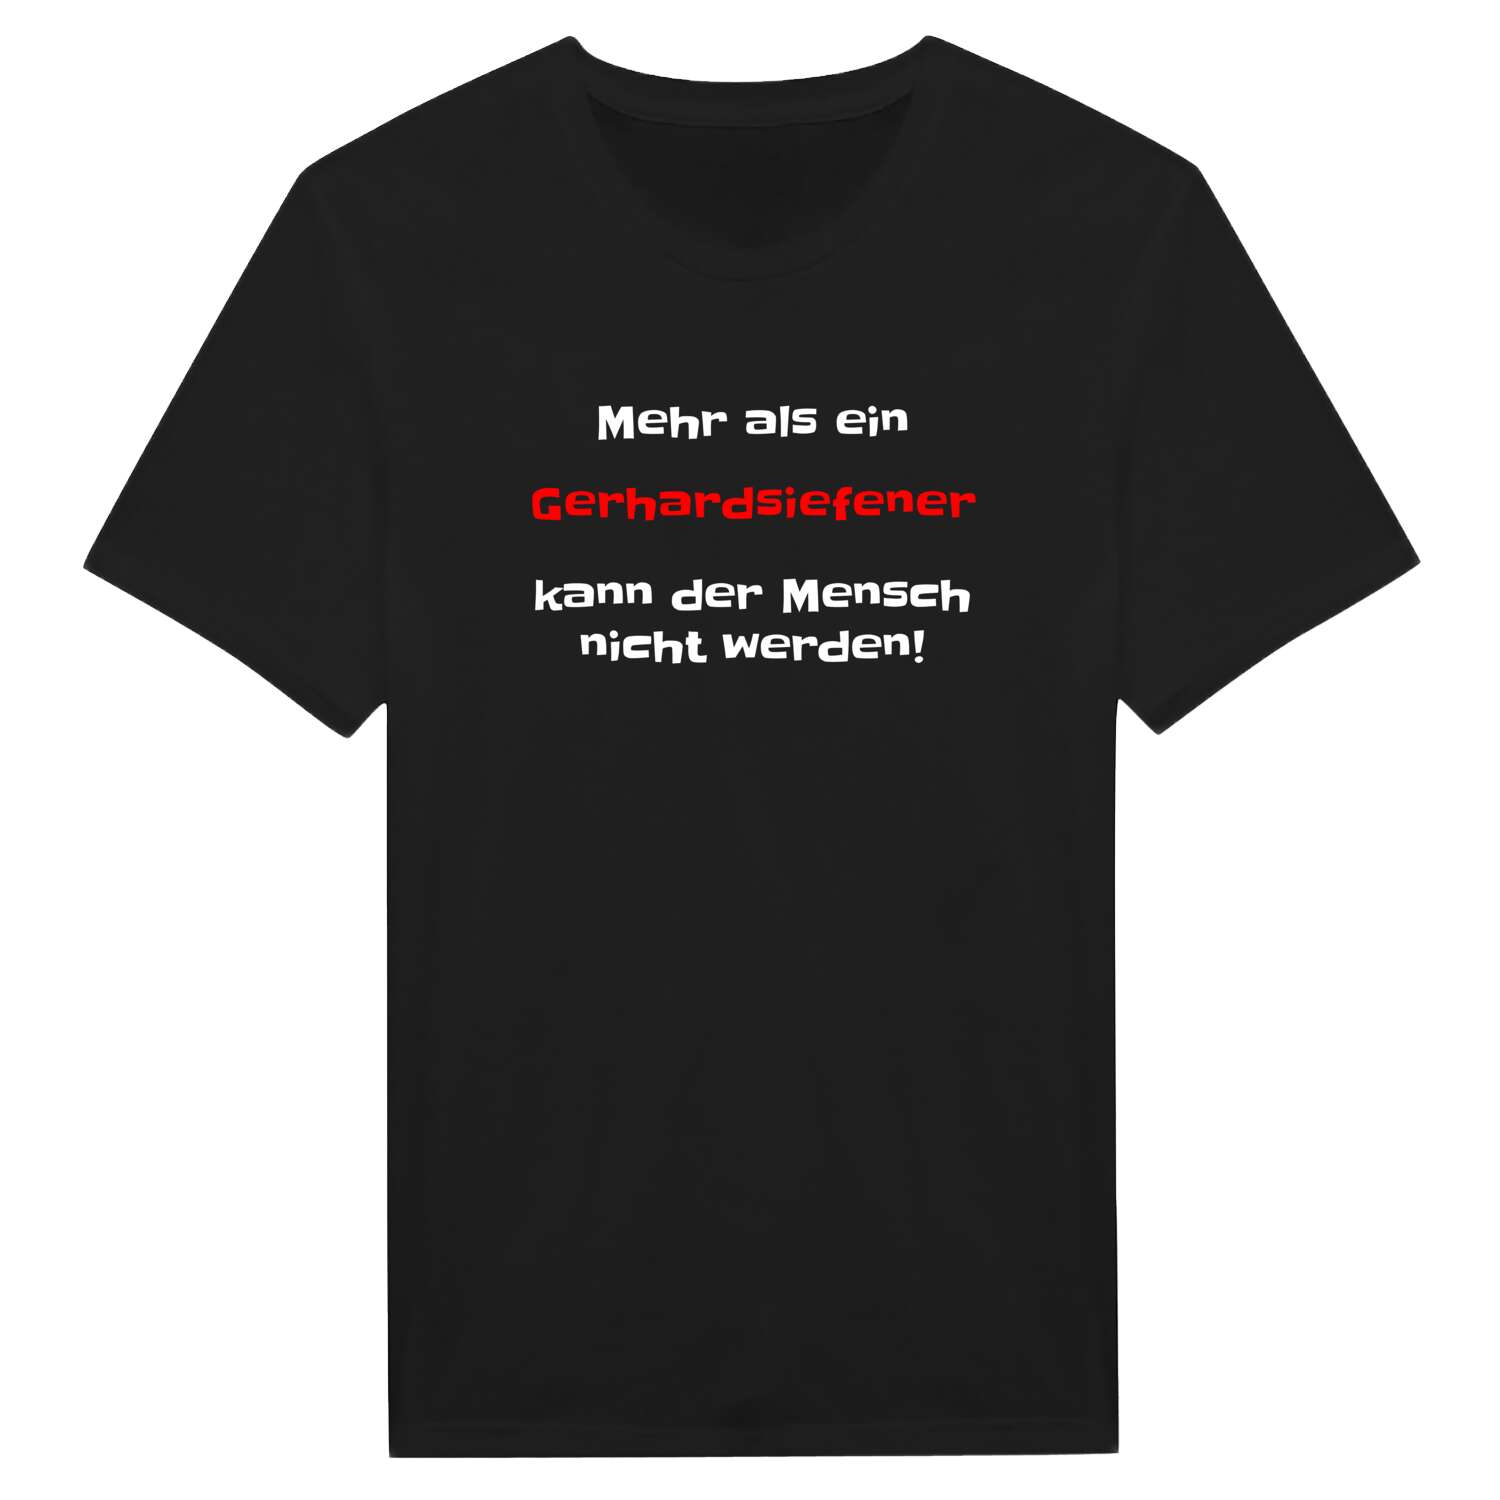 Gerhardsiefen T-Shirt »Mehr als ein«